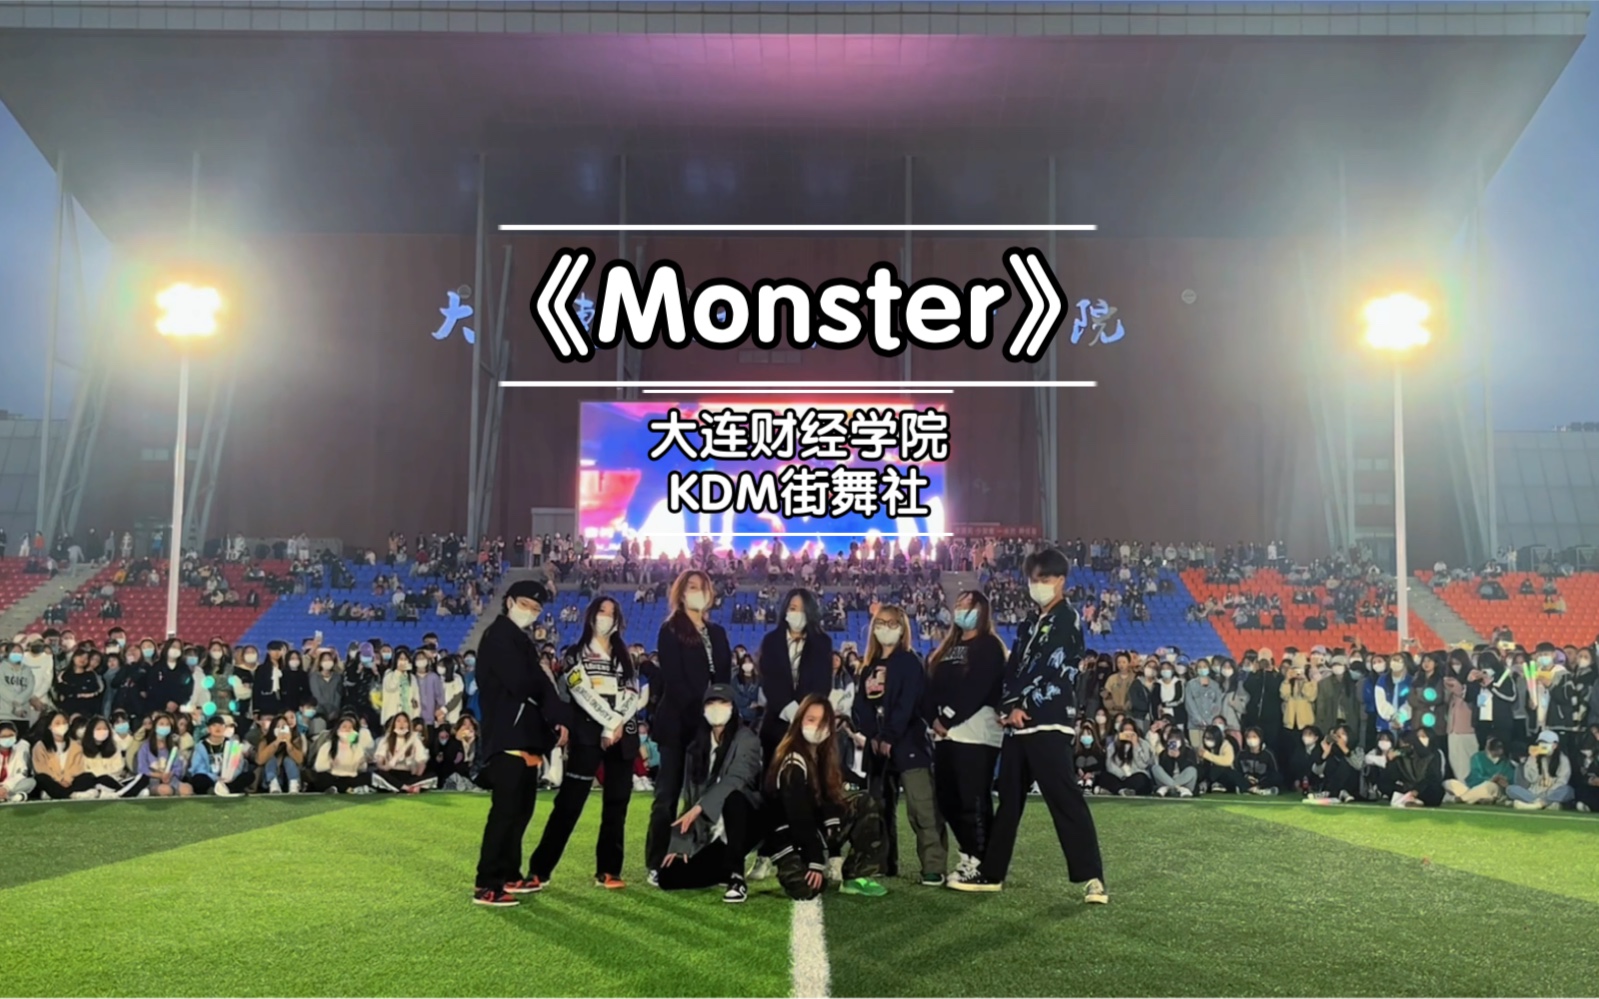 【Monster-EXO】随机舞蹈路演 舞蹈翻跳